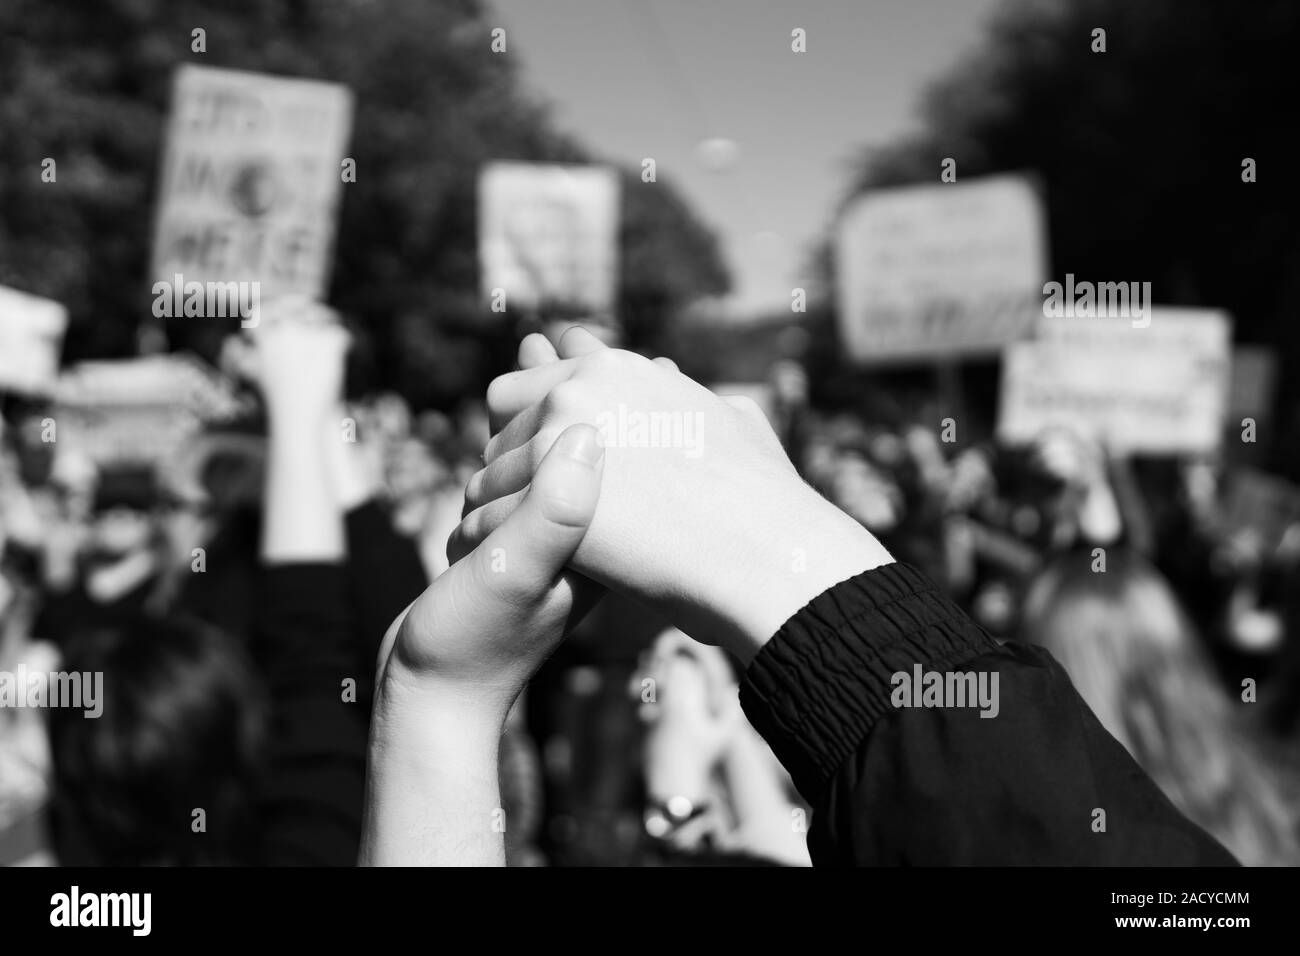 Zwei junge Menschen bei einer Kundgebung, zusammen Hand in Hand Signalisierung Frieden, Einheit und Entschlossenheit vor einer Masse, die Protest Plakate Stockfoto